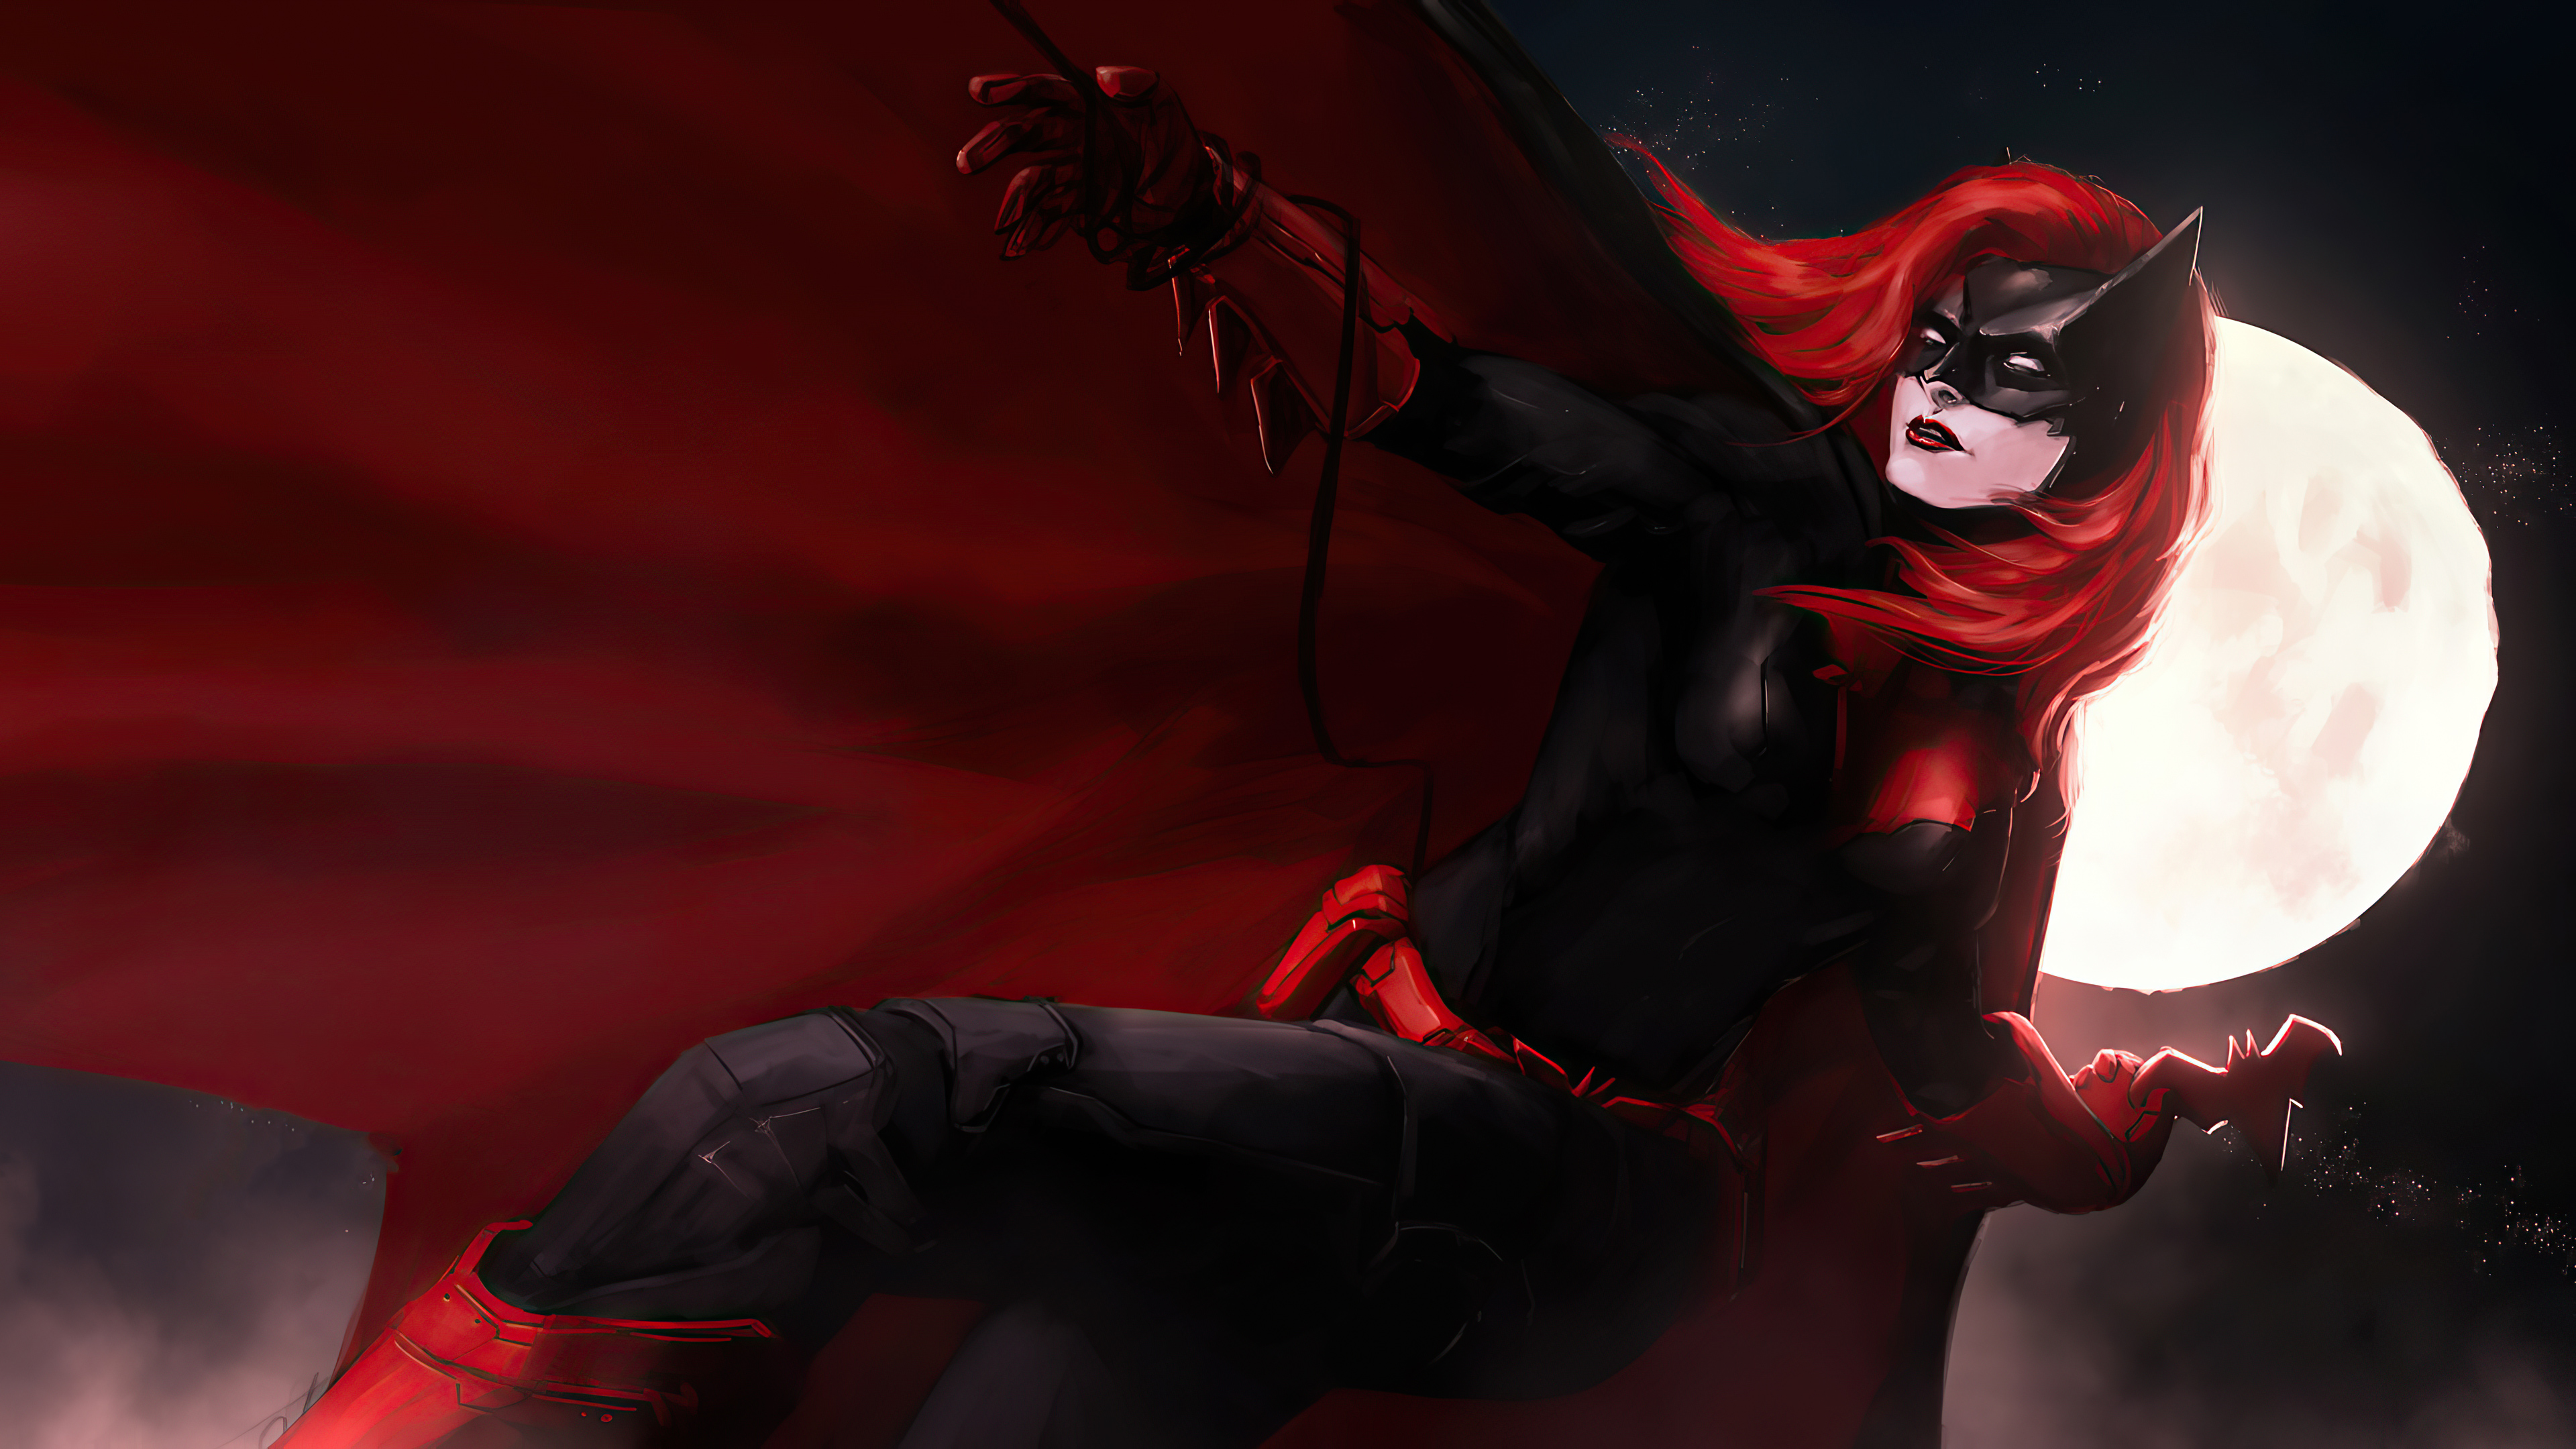 Batwoman 4k Ultra HD Wallpaper by Miguel Blanco